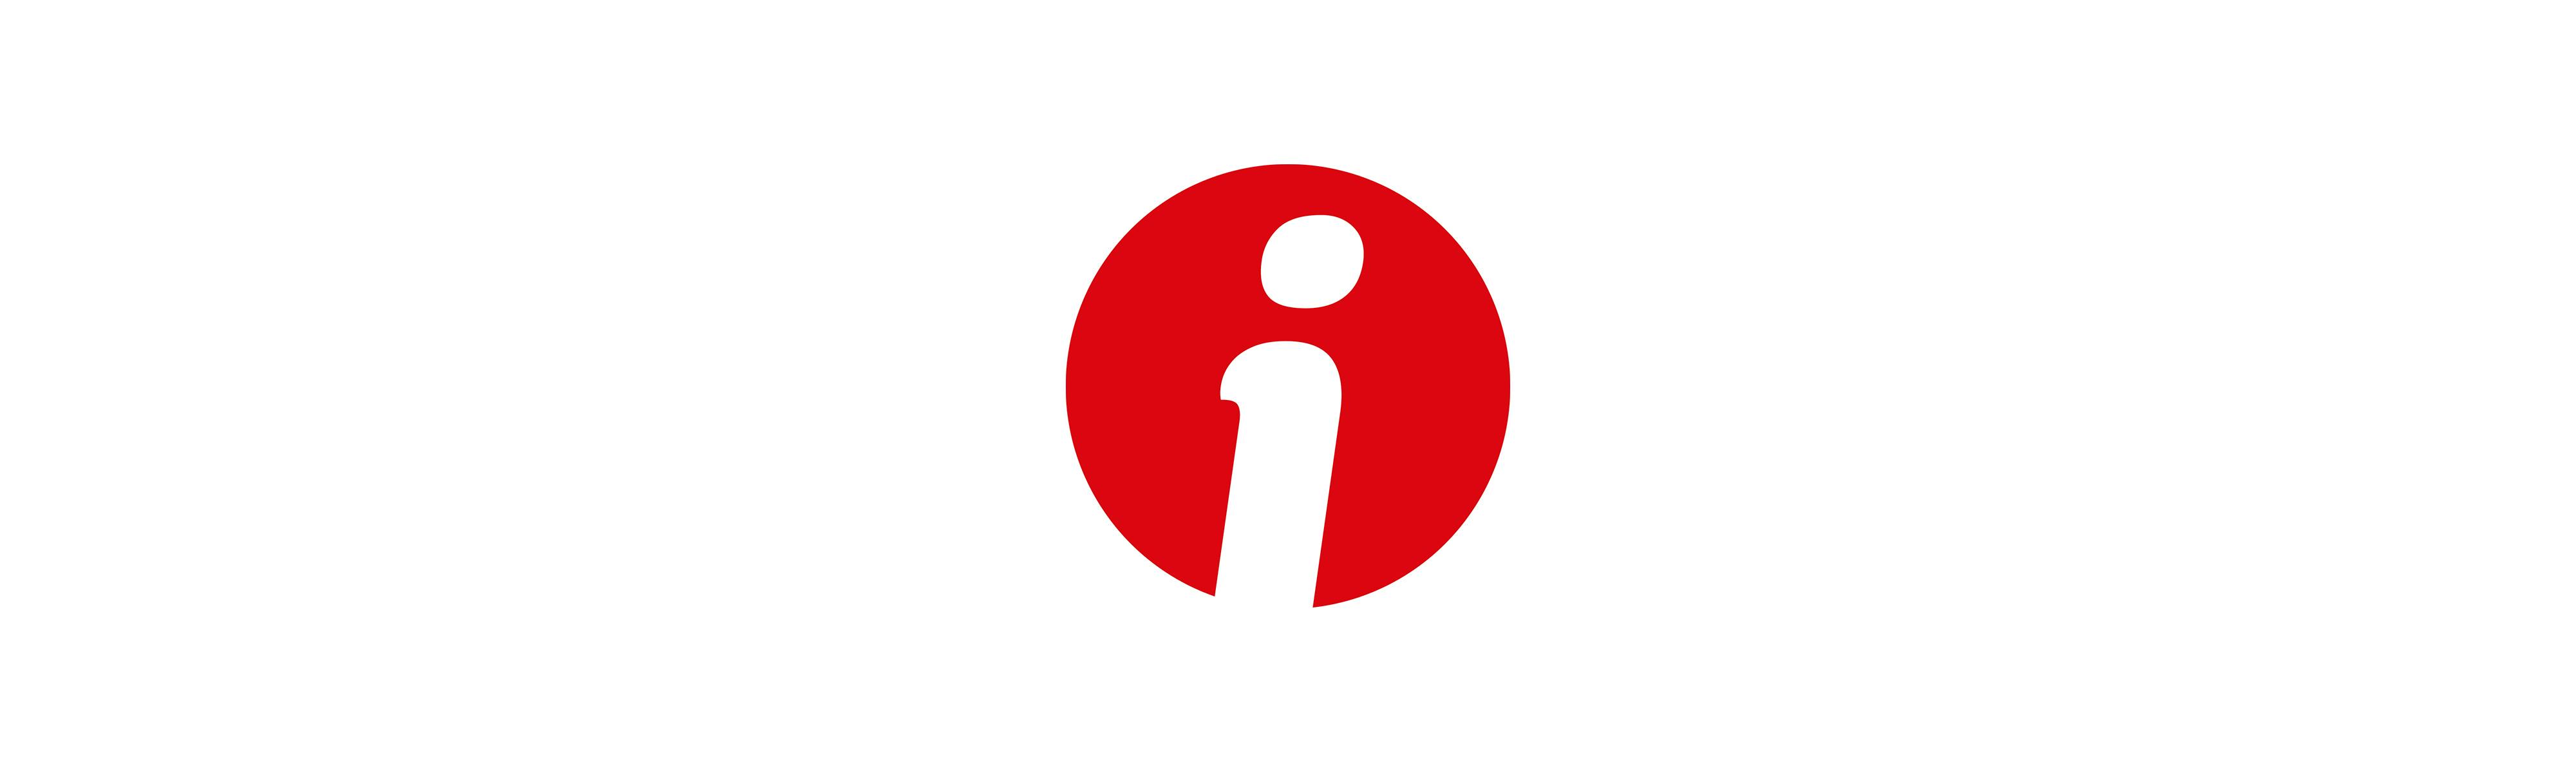 Logo della rivista "Informatore Coop" su sfondo bianco: una circonferenza piena rossa all'interno della quale si inserisce una "i" bianca.